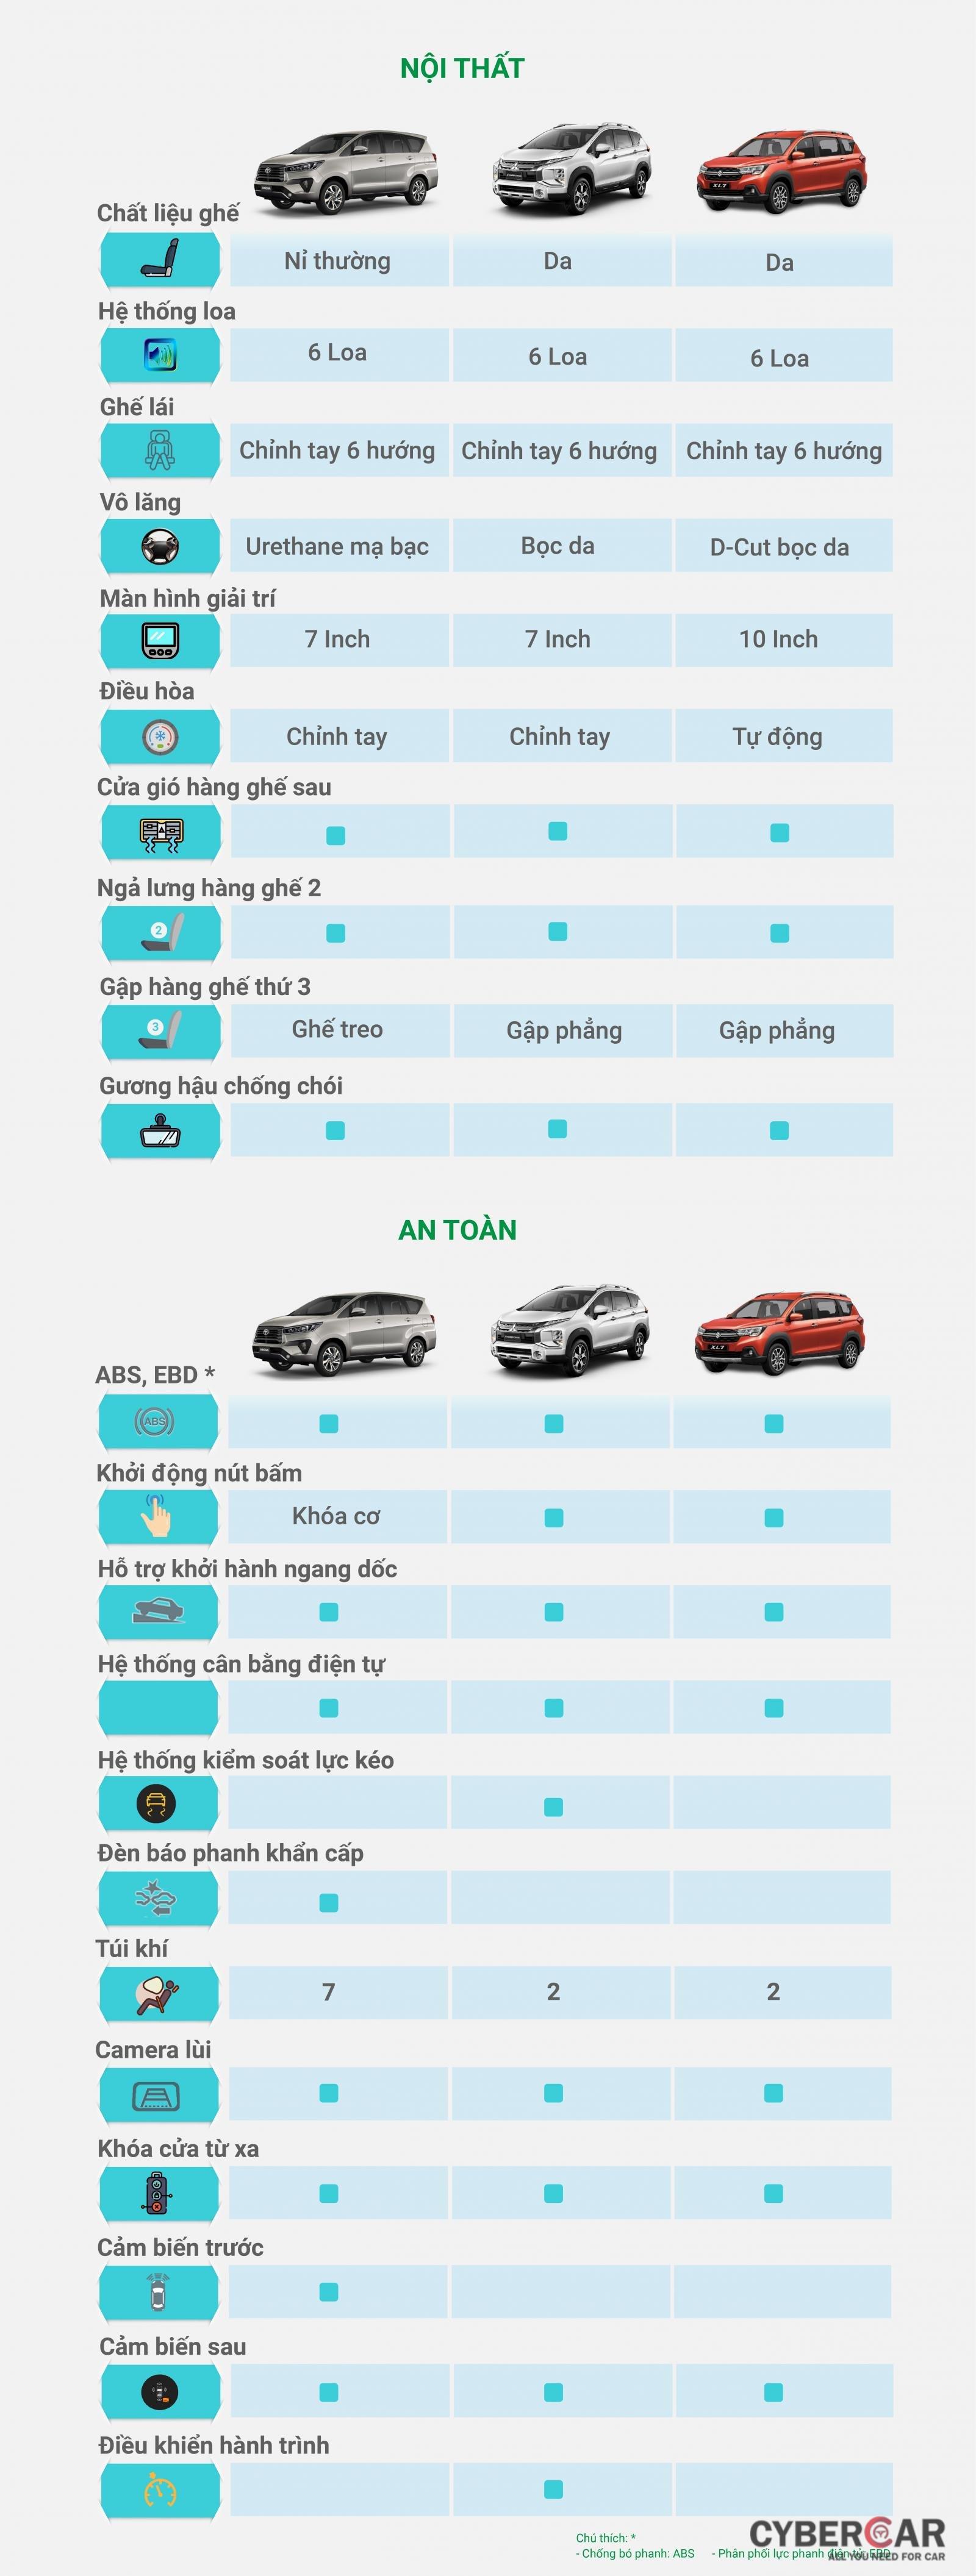 [Infographic] So sánh trang bị của 3 mẫu xe chuyên chạy dịch vụ tại Việt Nam a2